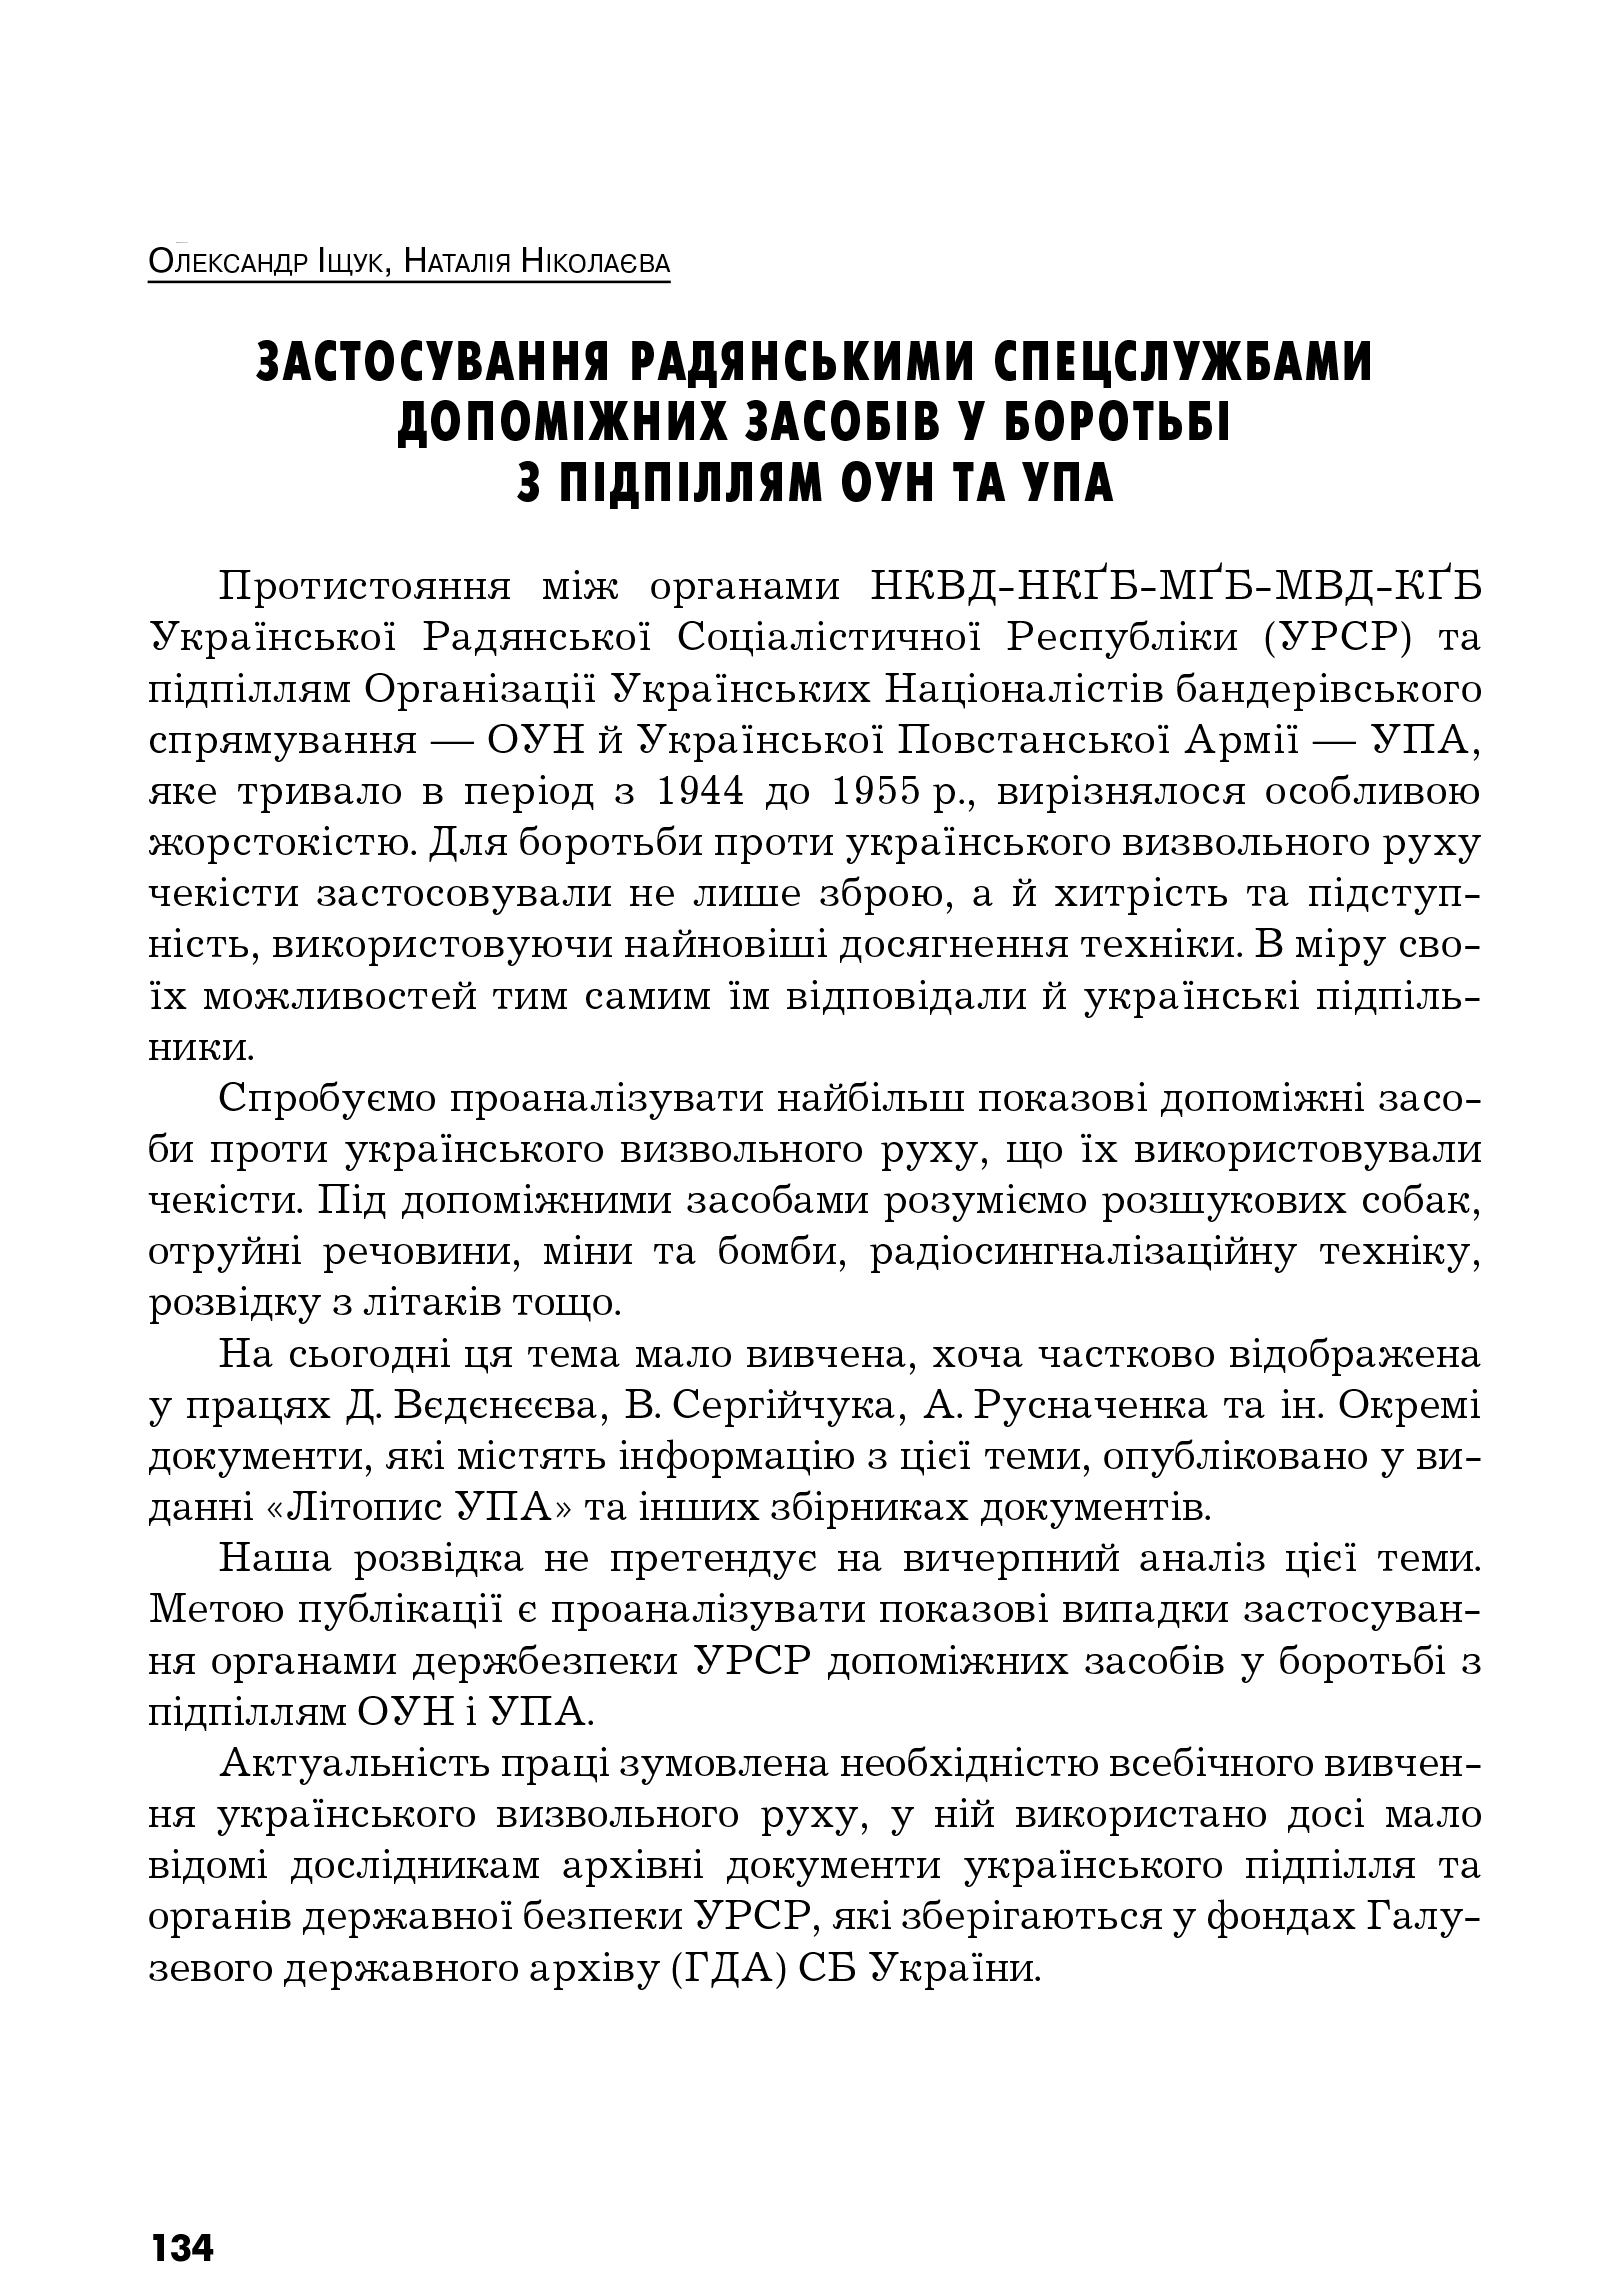 Український визвольний рух №12, ст. 134 - 162